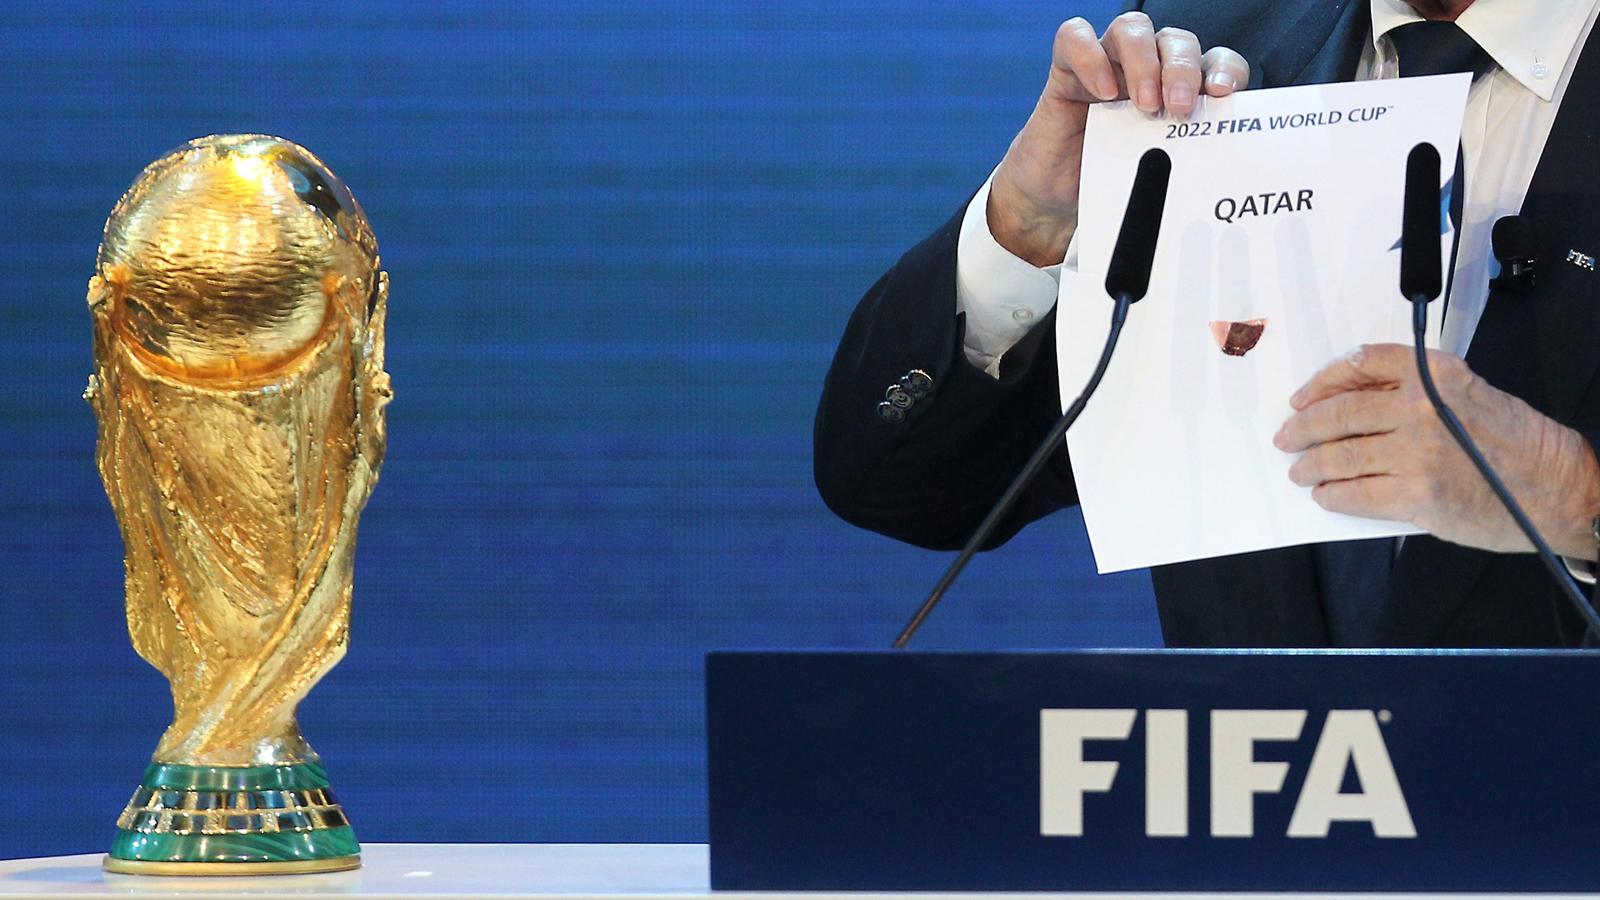 الفيفا يحسم الجدل مونديال 2022 سينظ م في قطر فقط نون بوست